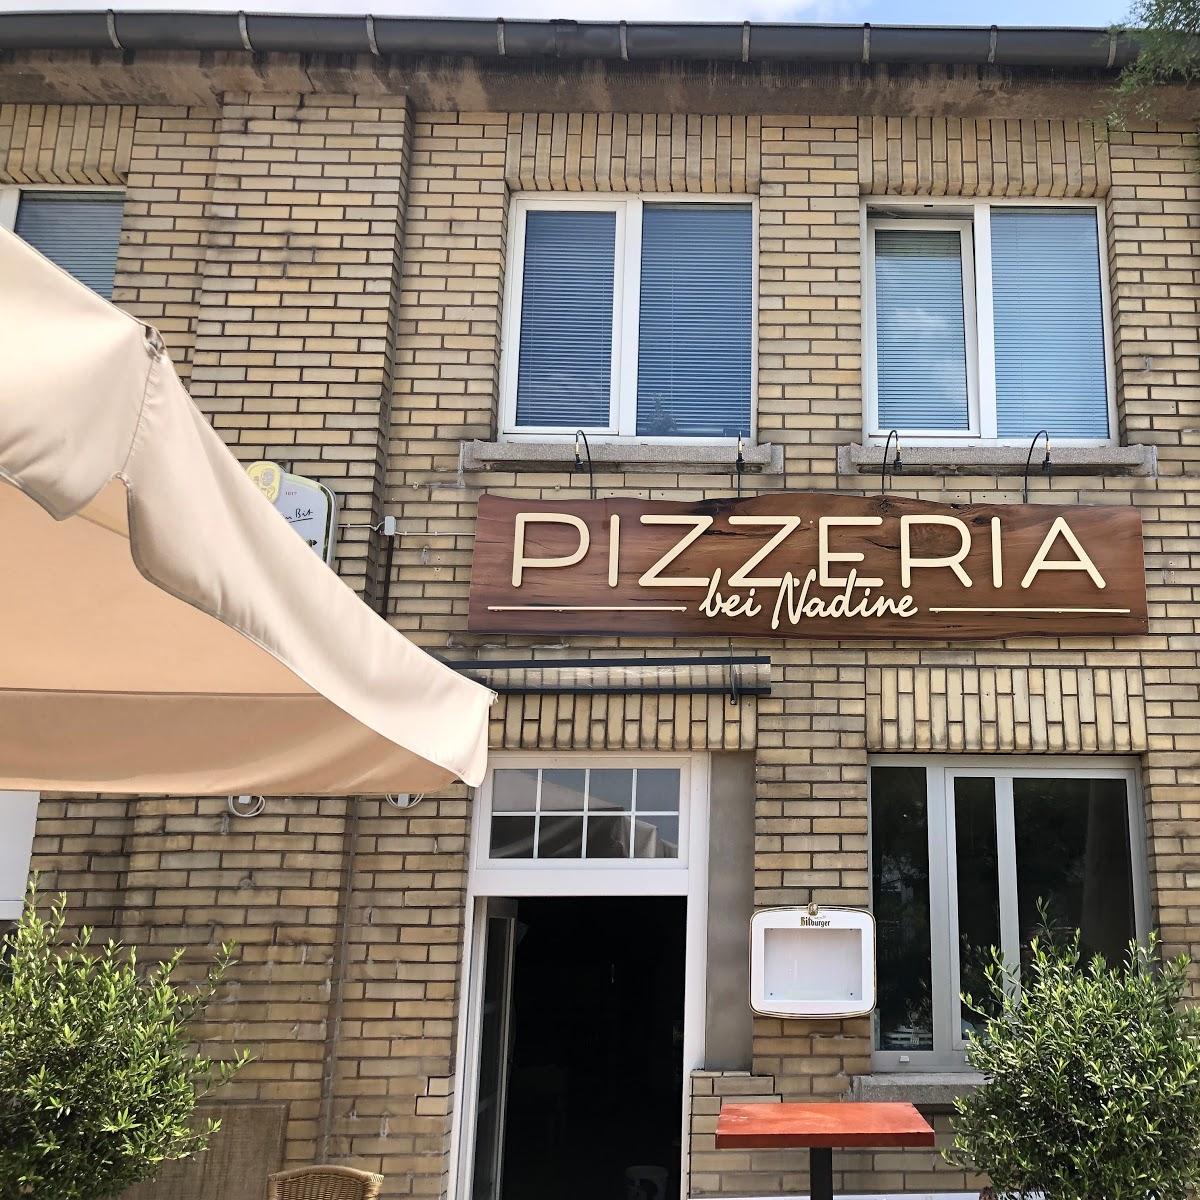 Restaurant "Pizzeria Bei Nadine" in Frankfurt am Main